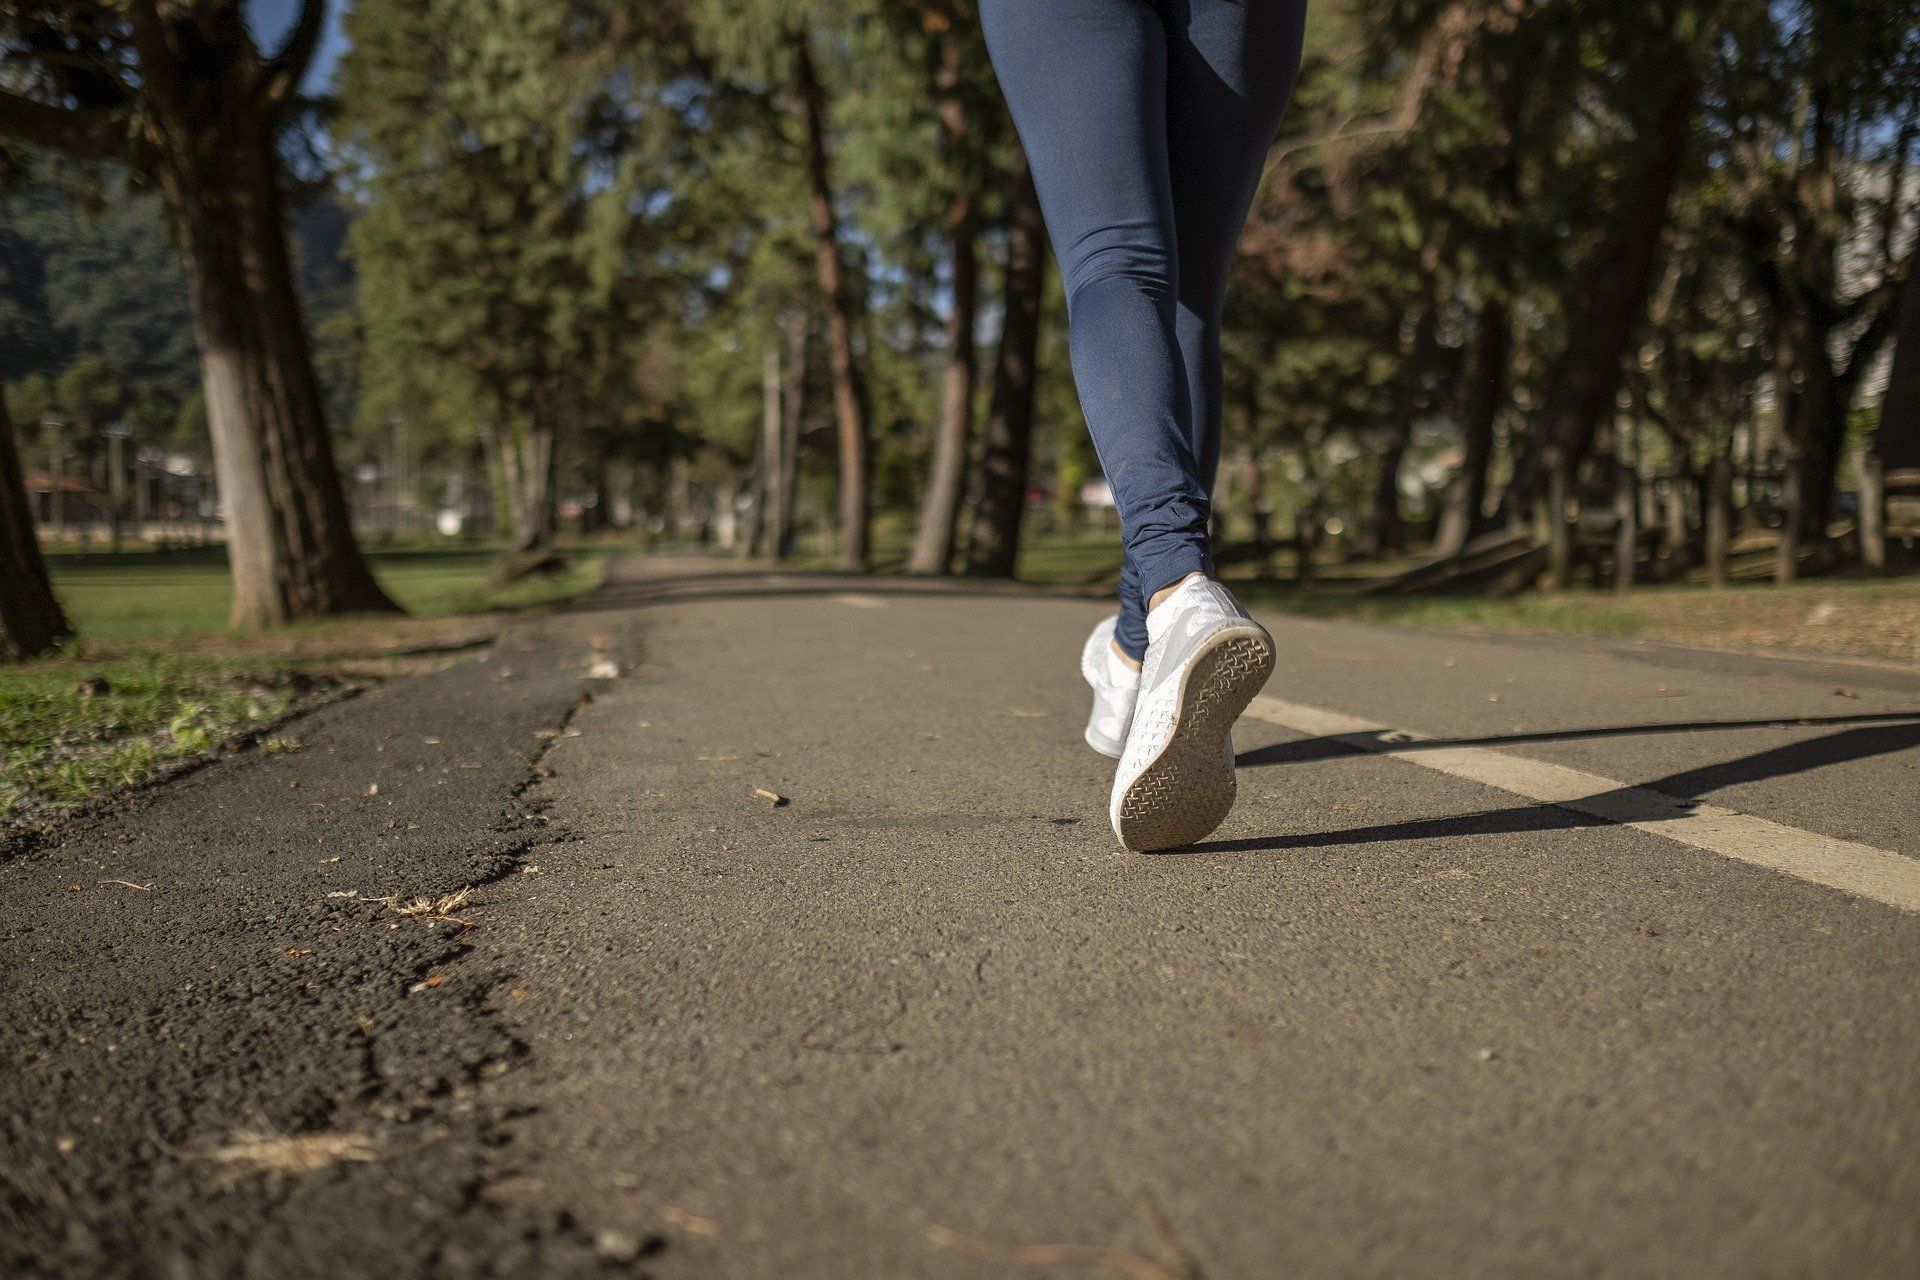 El power walking es una práctica de ejercicio físico / Foto: Daniel Reche - Pixabay